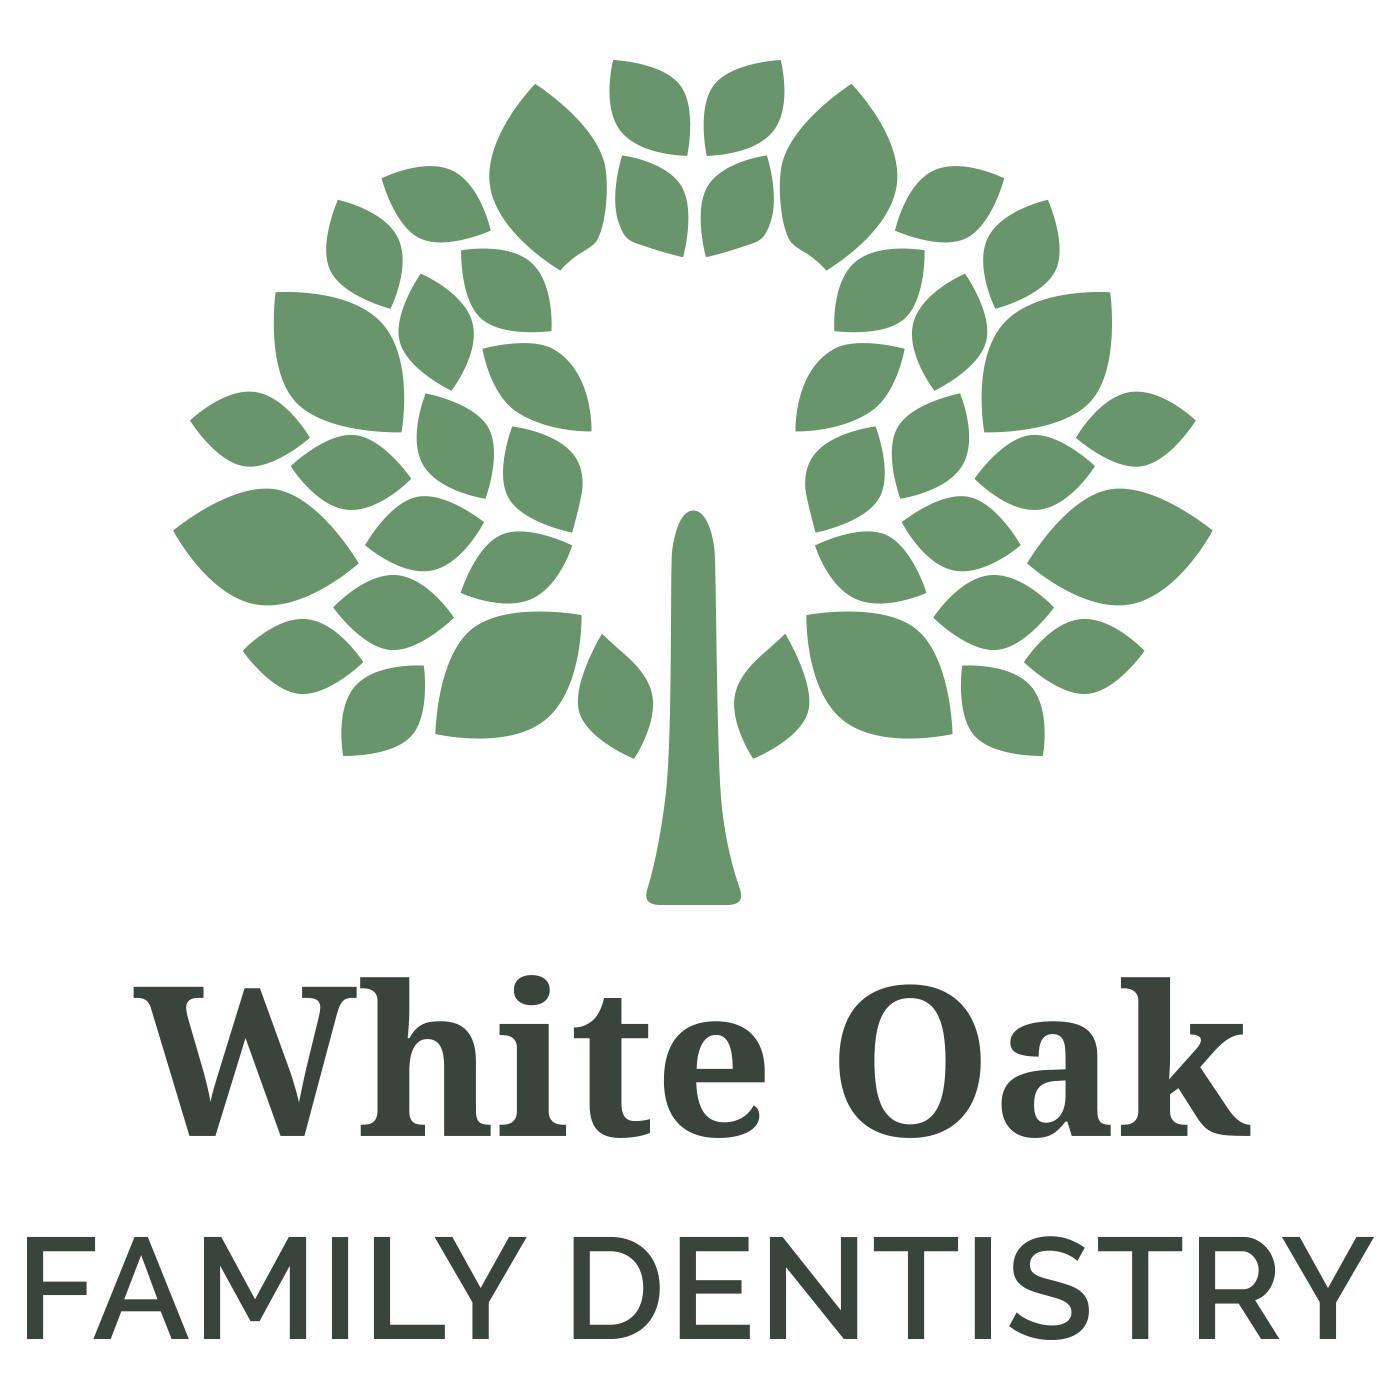 White Oak Family Dentistry - Garner, NC 27529 - (919)986-0151 | ShowMeLocal.com